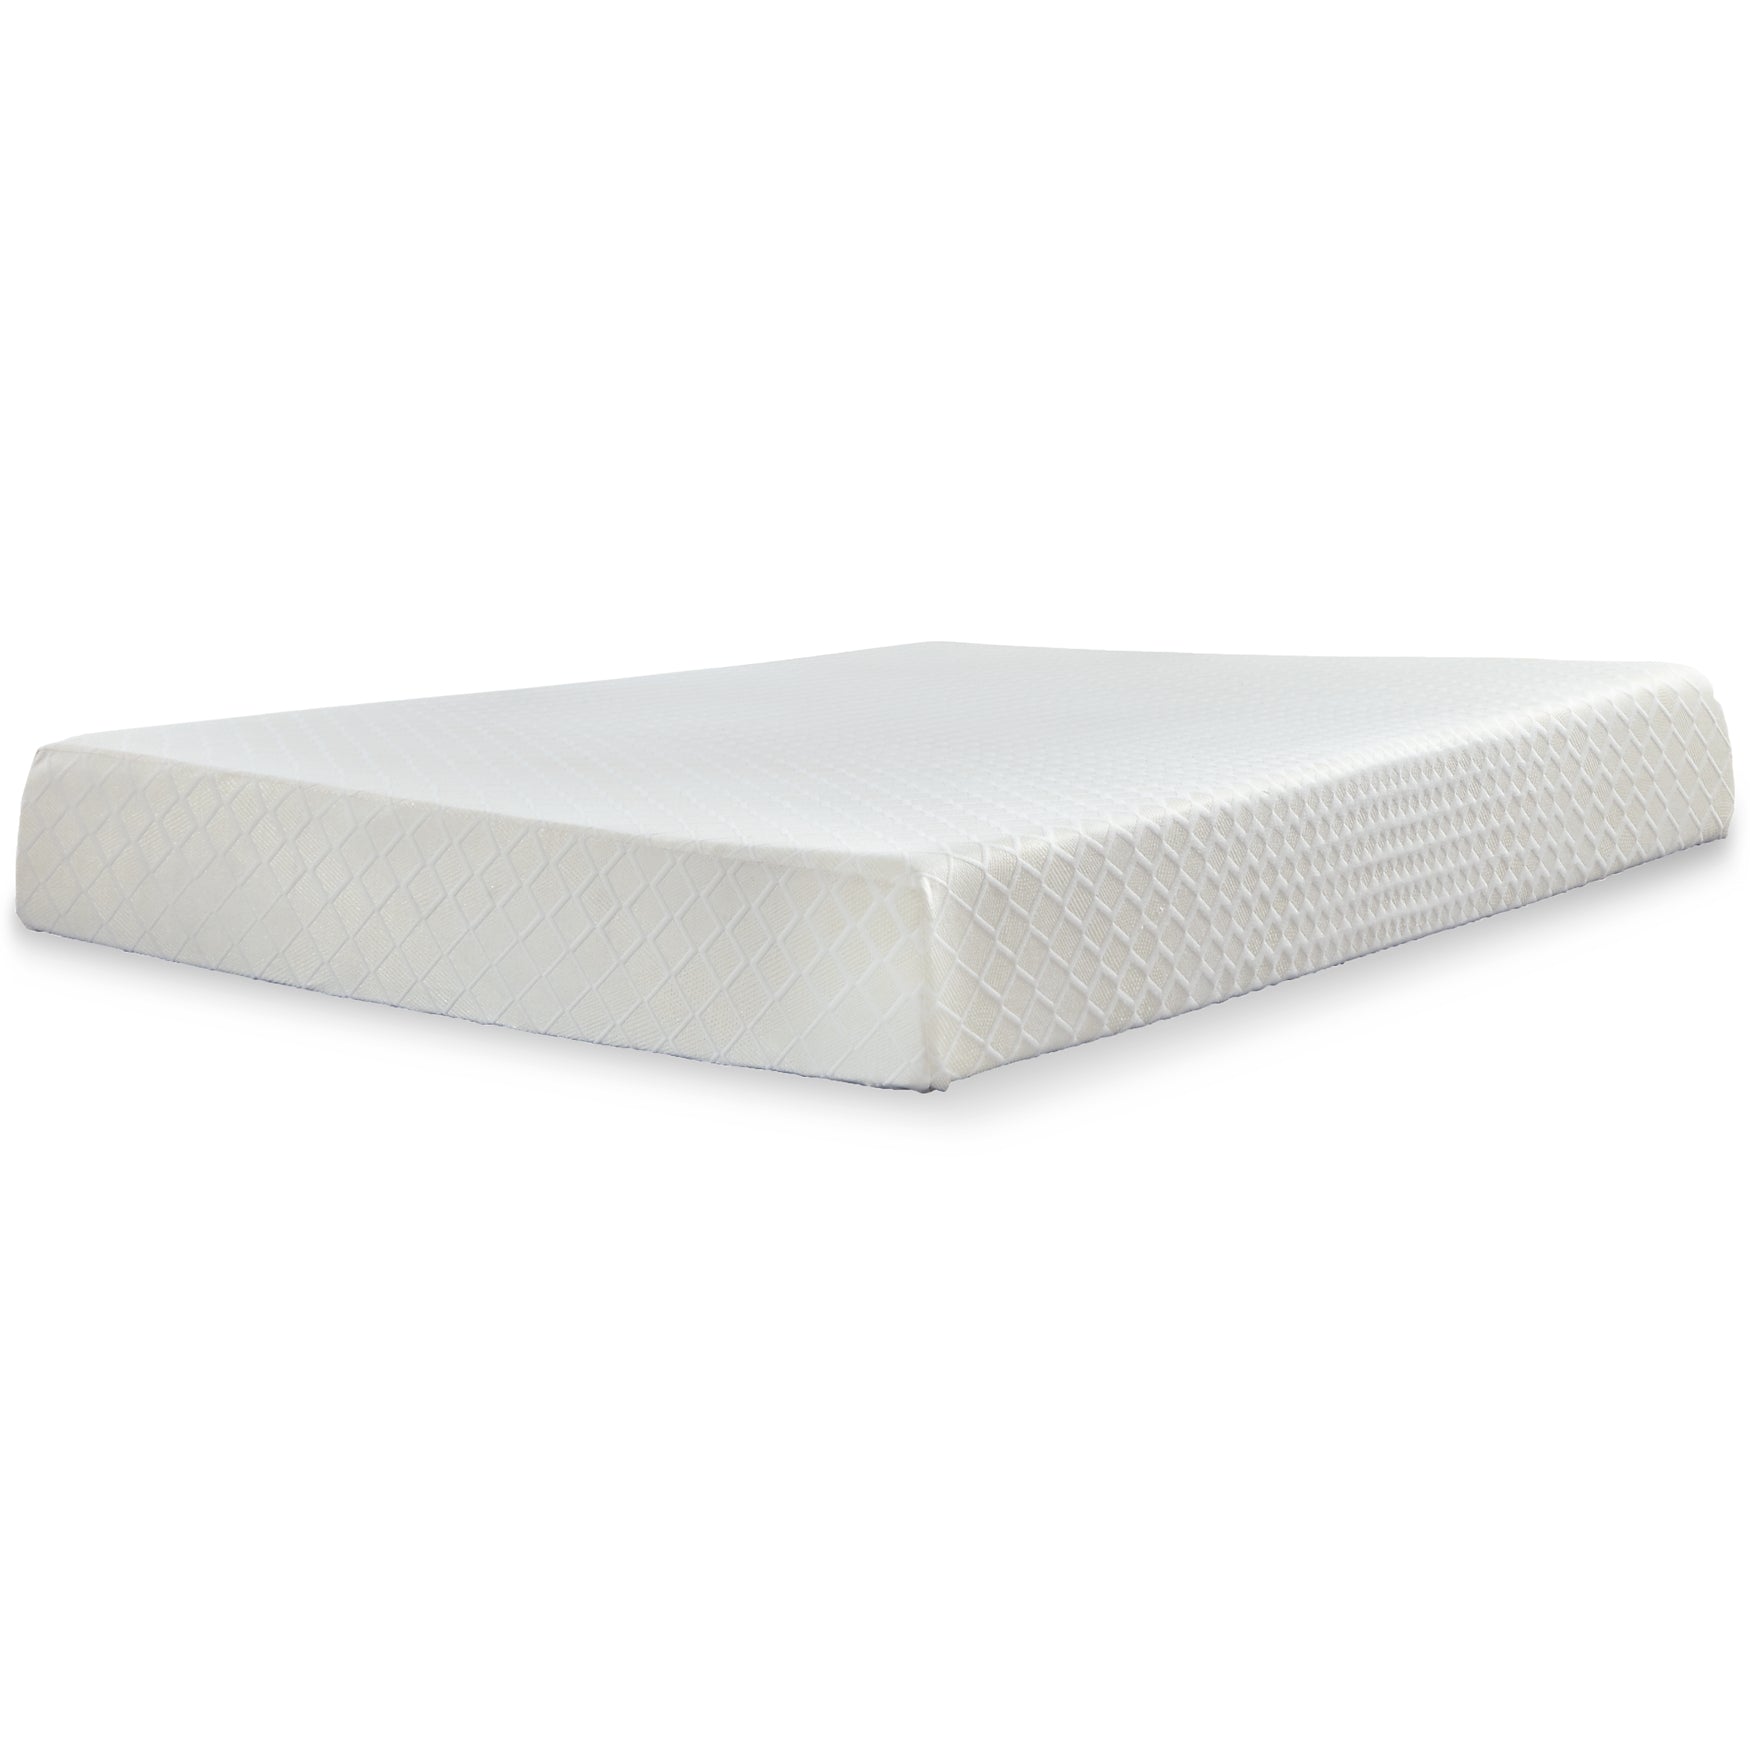 10 Inch Chime Memory Foam Mattress with Foundation Sierra Sleep® by Ashley